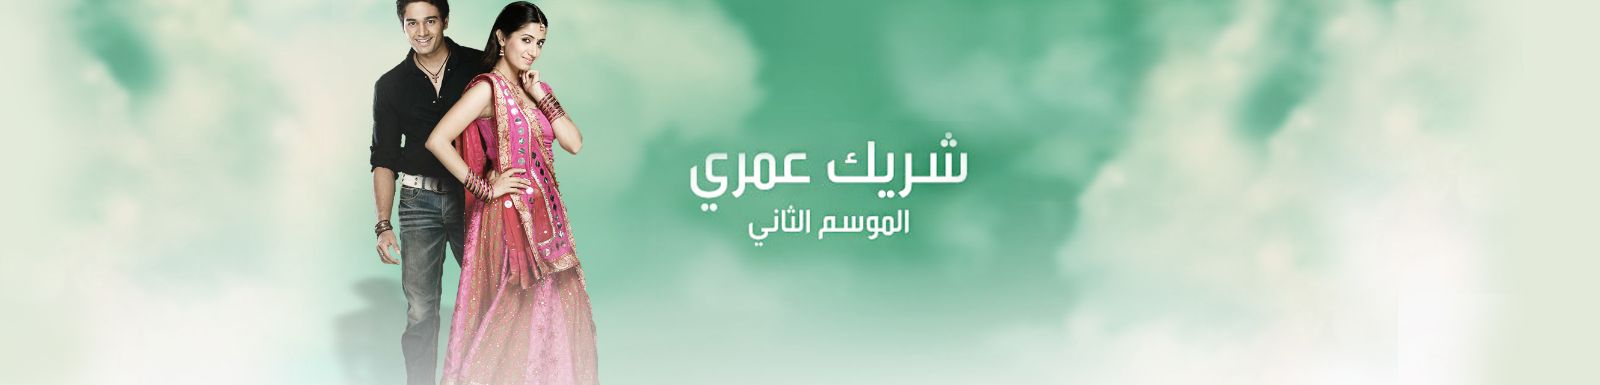 قصة وأحداث مسلسل شريك عمري الجزء الثاني 2015 على قناة mbc دراما